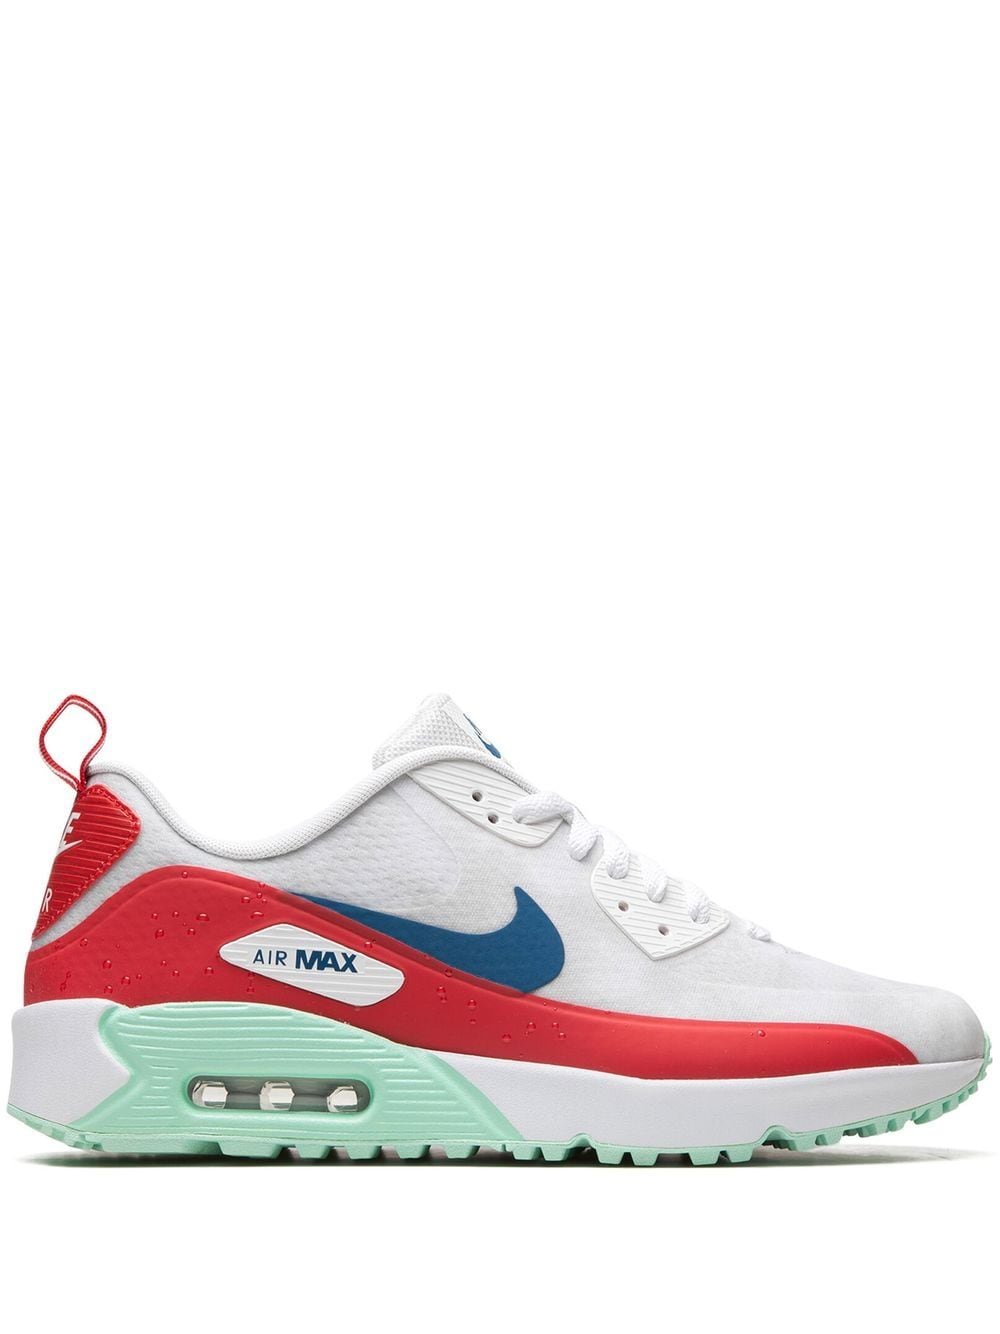 Nike Air Max 90 Nrg U22 Sneakers In White